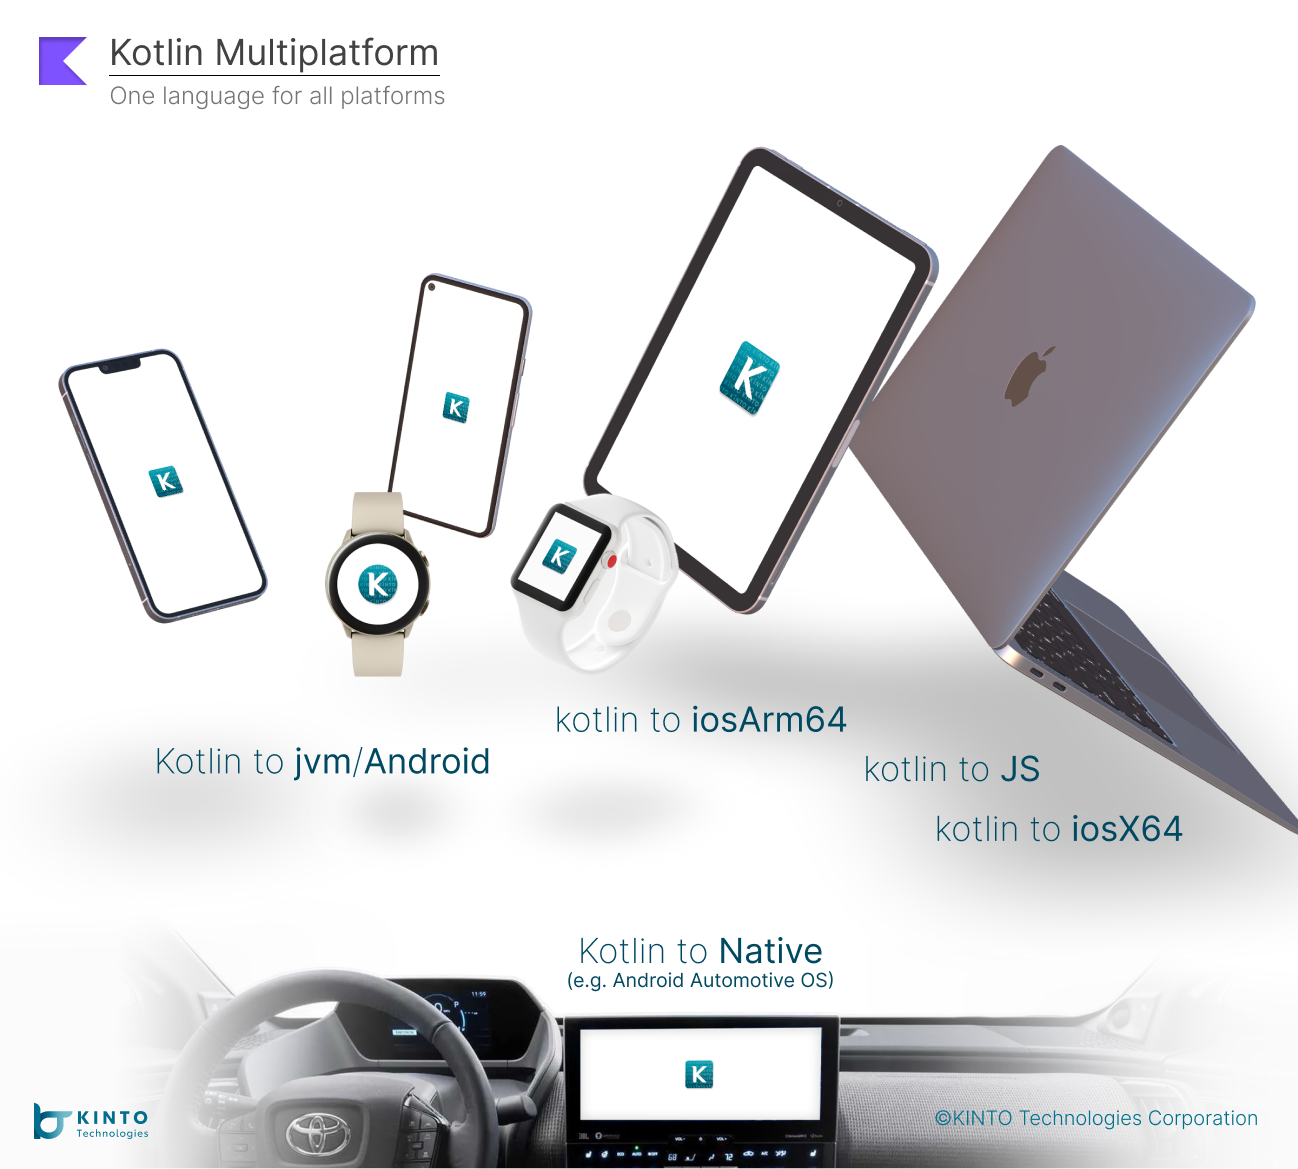 Cover Image for Mobile App Development Using Kotlin Multiplatform Mobile (KMM)